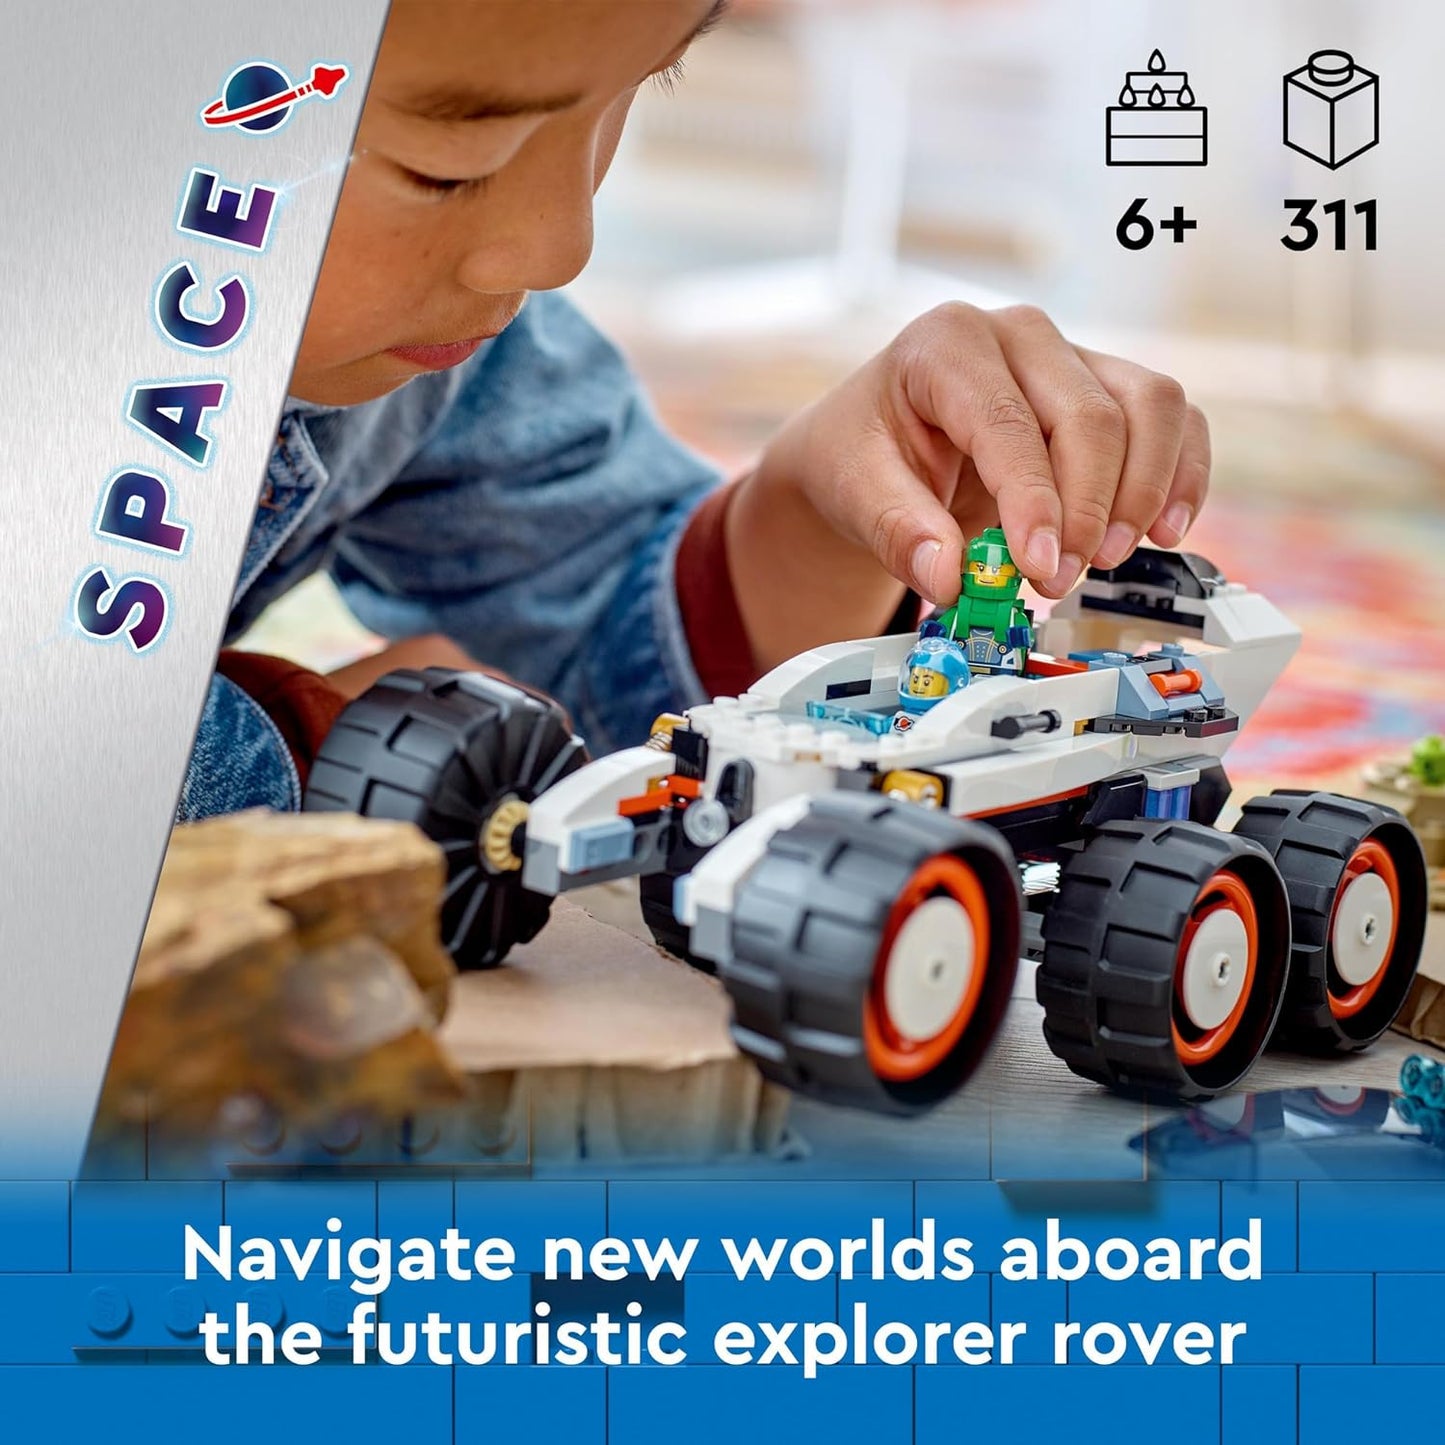 LEGO Conjunto de brinquedos de construção City Space Explorer Rover e Alien Life para meninos, meninas e crianças de 6 anos ou mais com minifiguras de astronautas, robô de brinquedo e figuras de alienígenas para brincadeiras imaginativas, presente